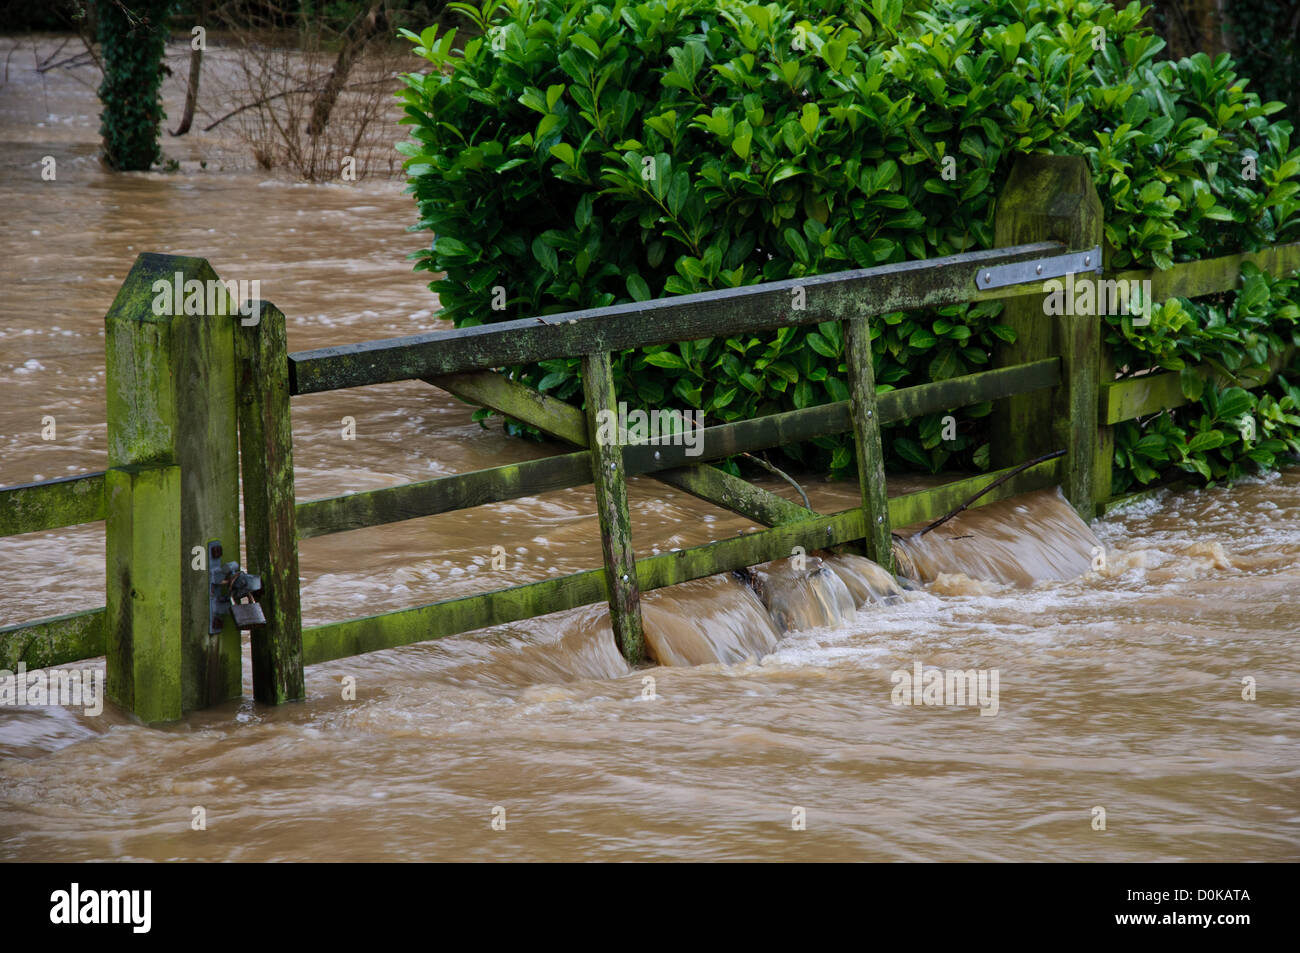 La forte pluie a entraîné des inondations dans de nombreuses régions du Royaume-Uni avec le Yorkshire du nord étant particulièrement touchées. Cette photo montre les eaux de crue de la morue Beck, qui a éclaté ses rives, verser sur une barre de cinq porte dans la ville de marché de Thirsk, Yorkshire du Nord le 27 novembre 2012. Banque D'Images